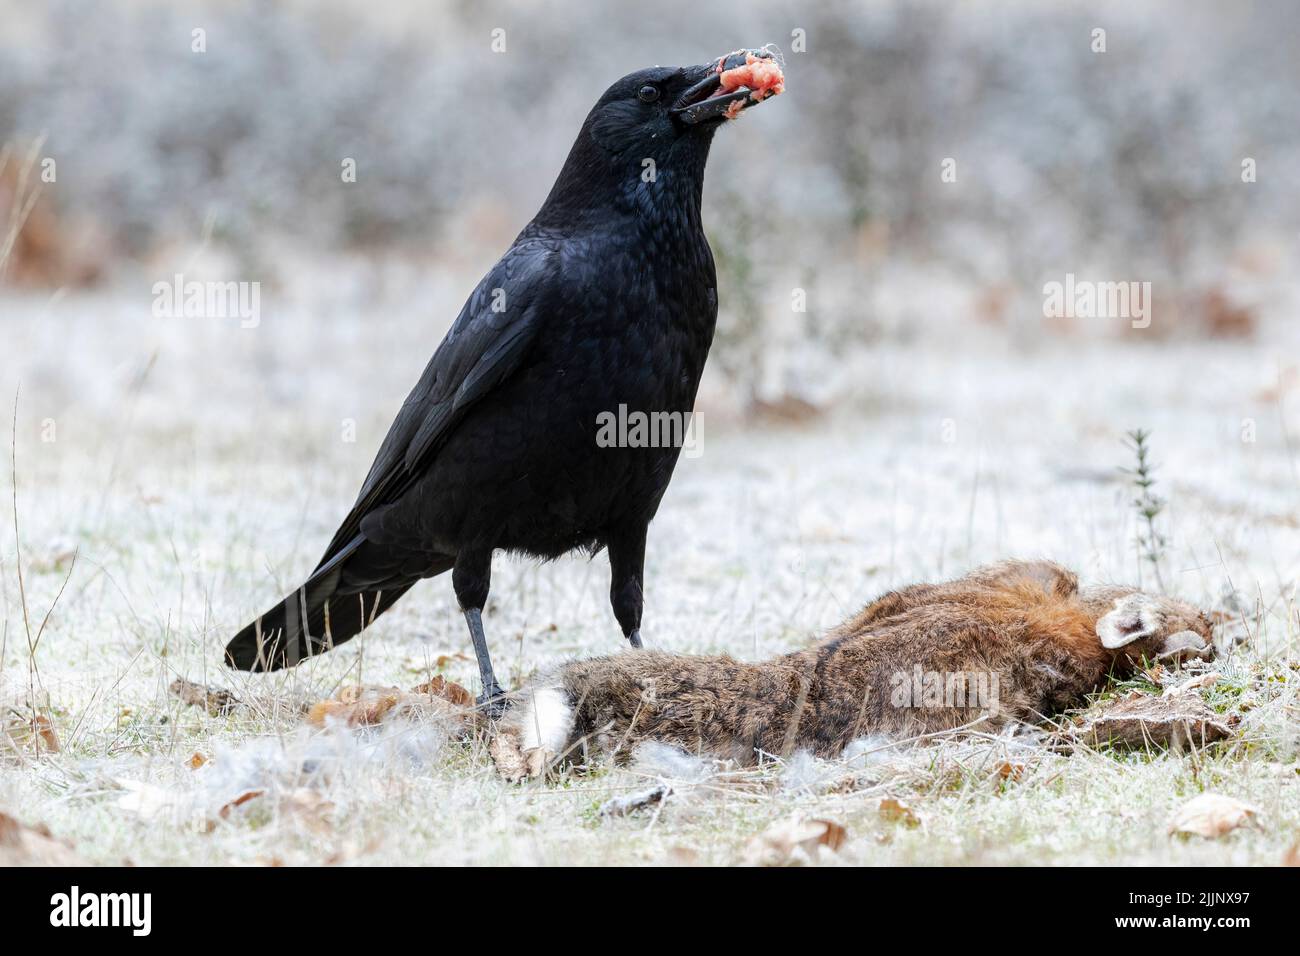 Corvo di Carrion (Corvus corone) che si alimenta a terra da un coniglio morto. Foto Stock